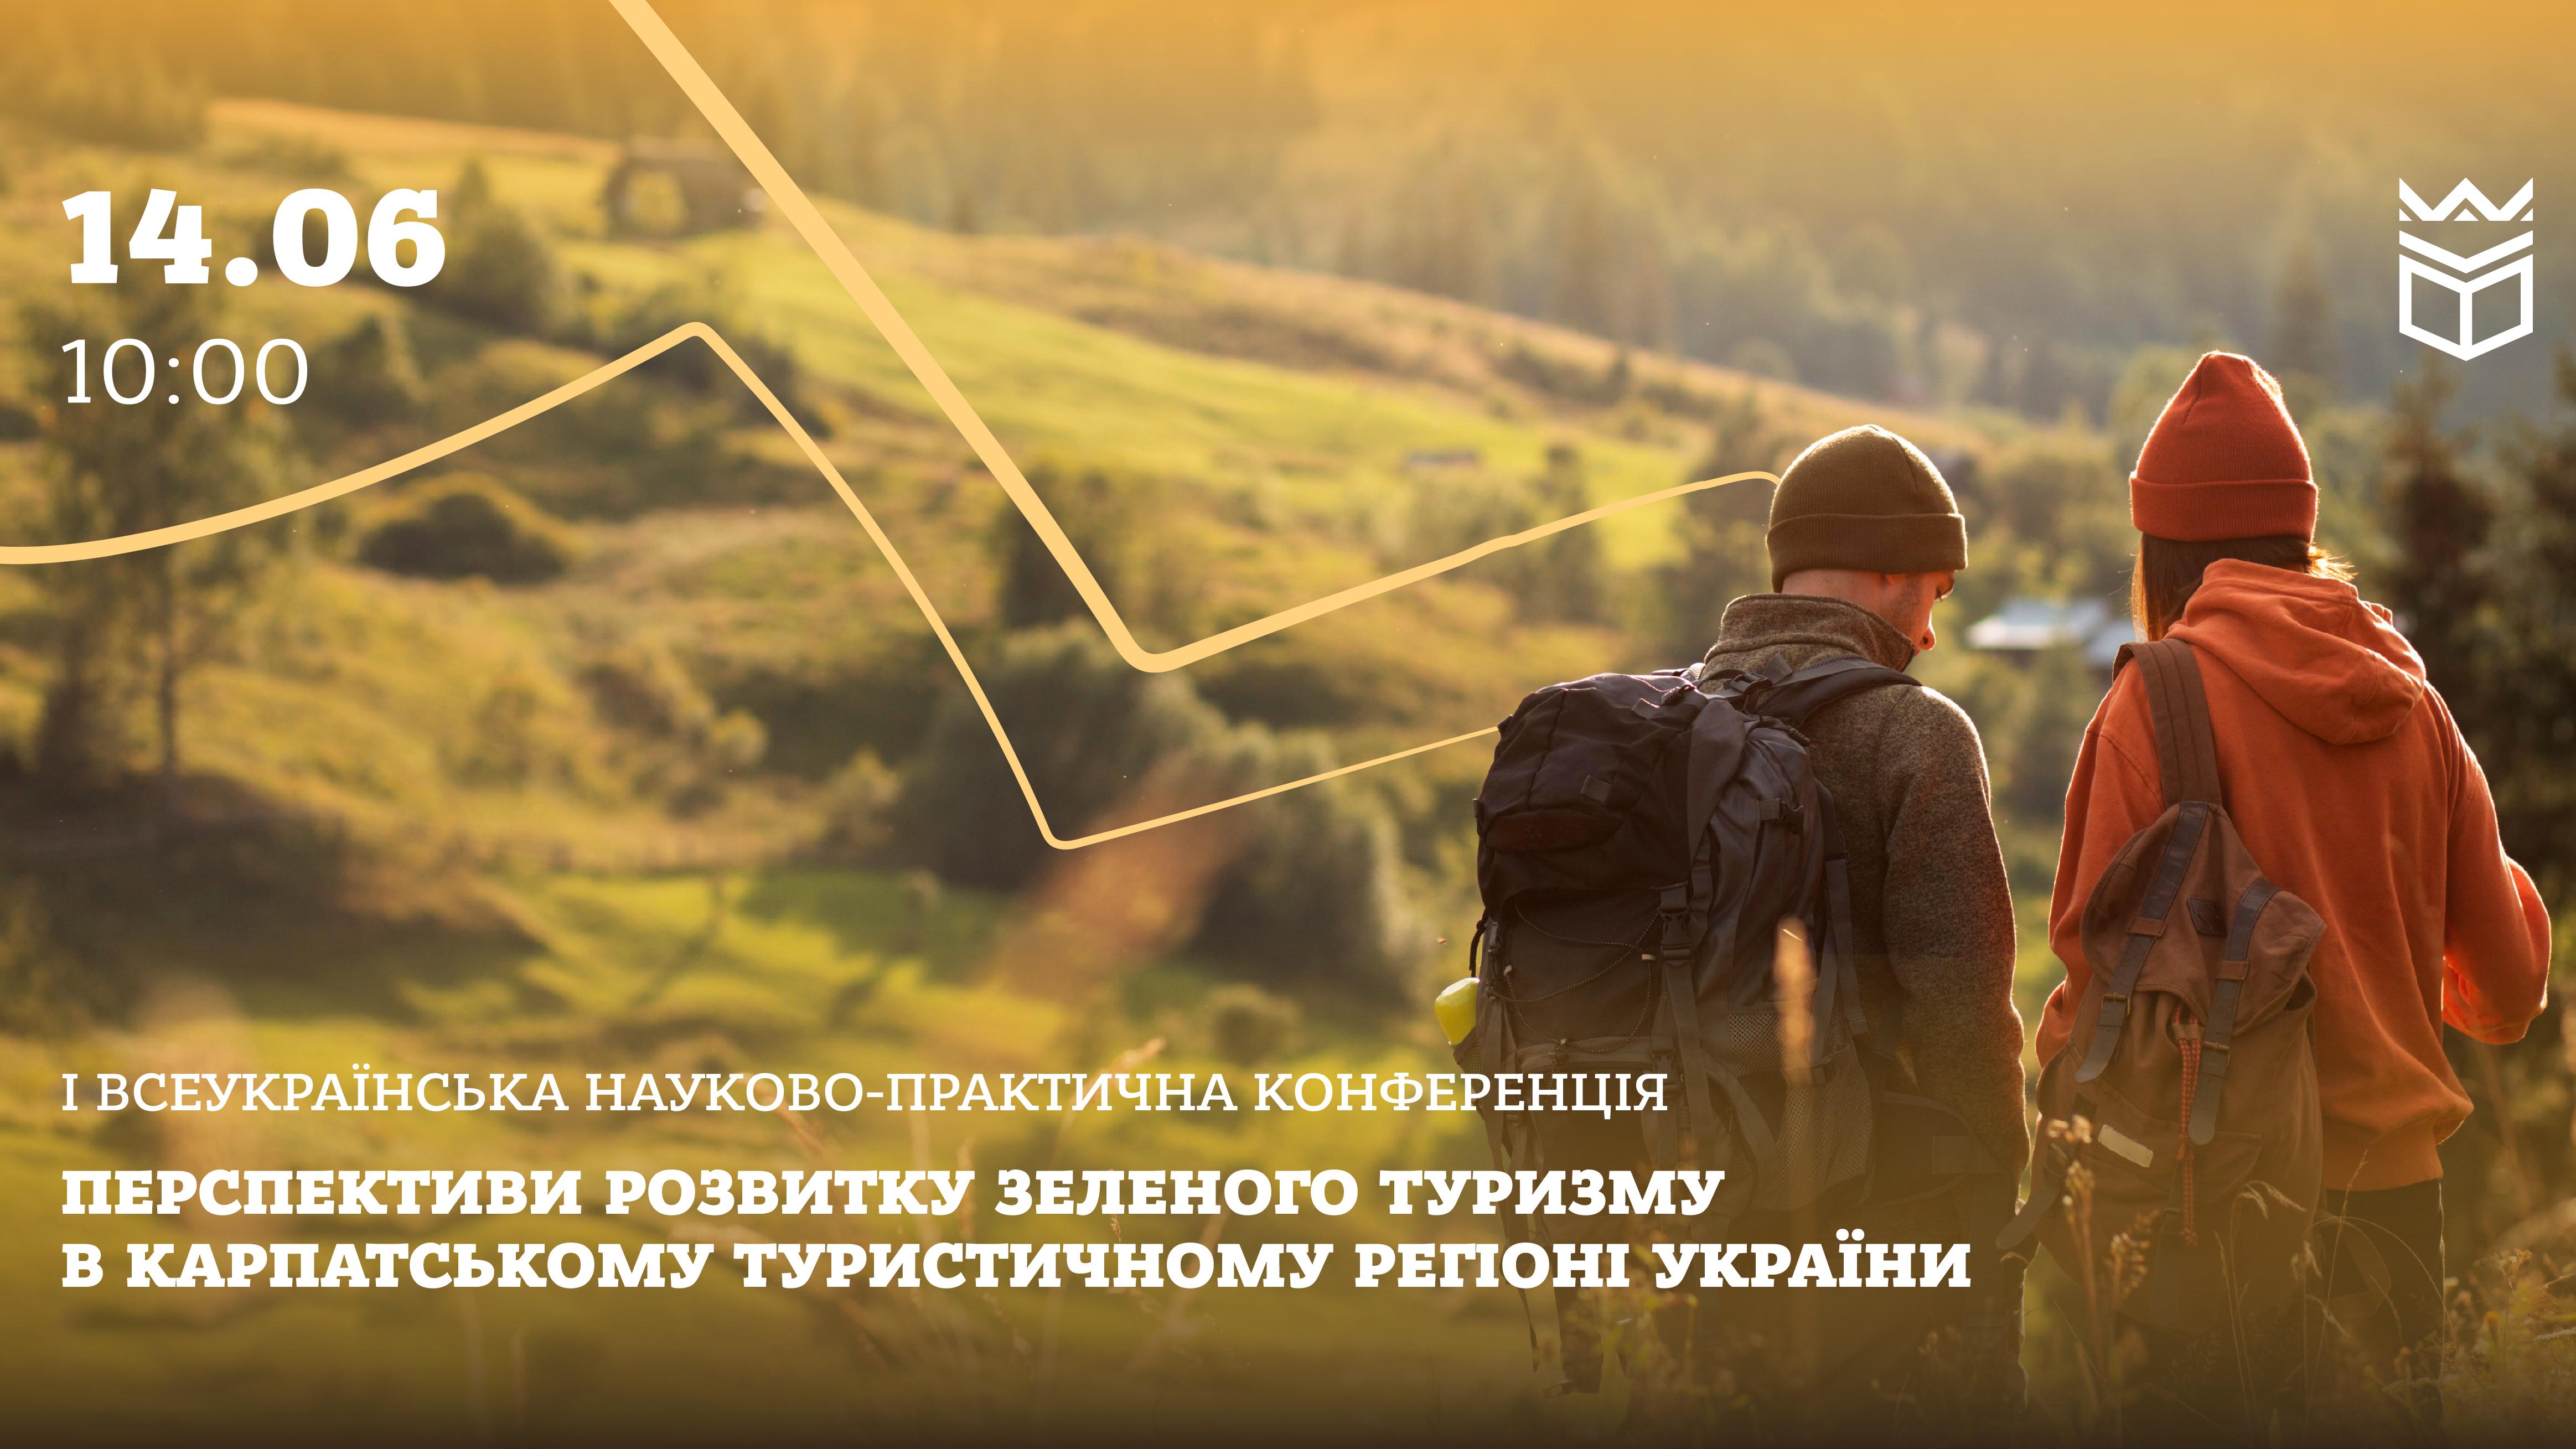 Перспективи розвитку зеленого туризму в Карпатському туристичному регіоні України